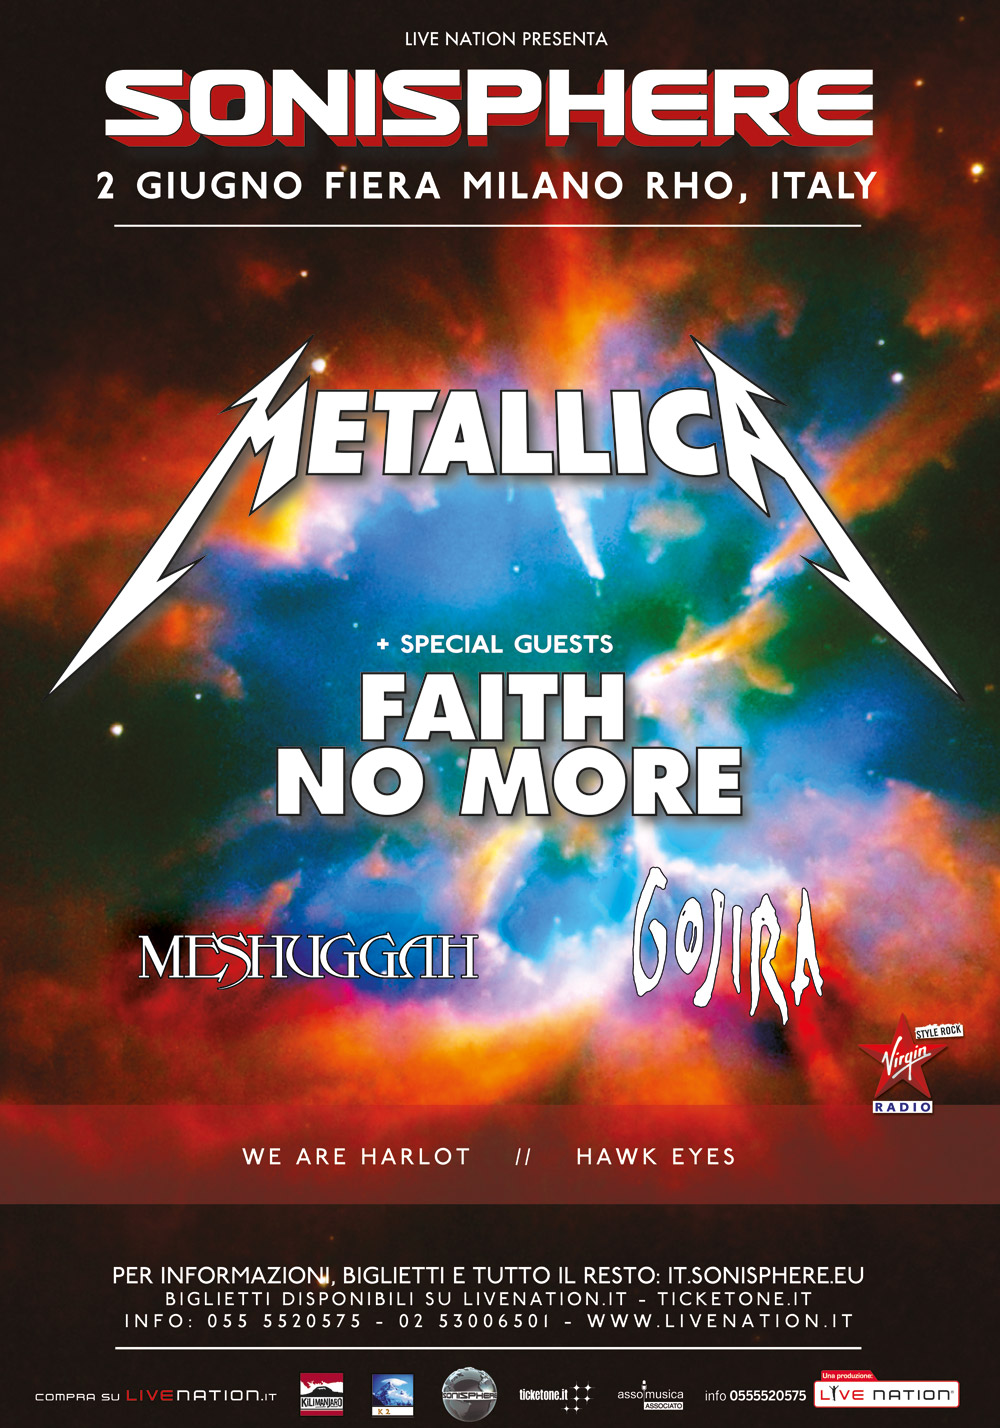  Sonisphere 2015, definita la line up della giornata: aprono i Metallica